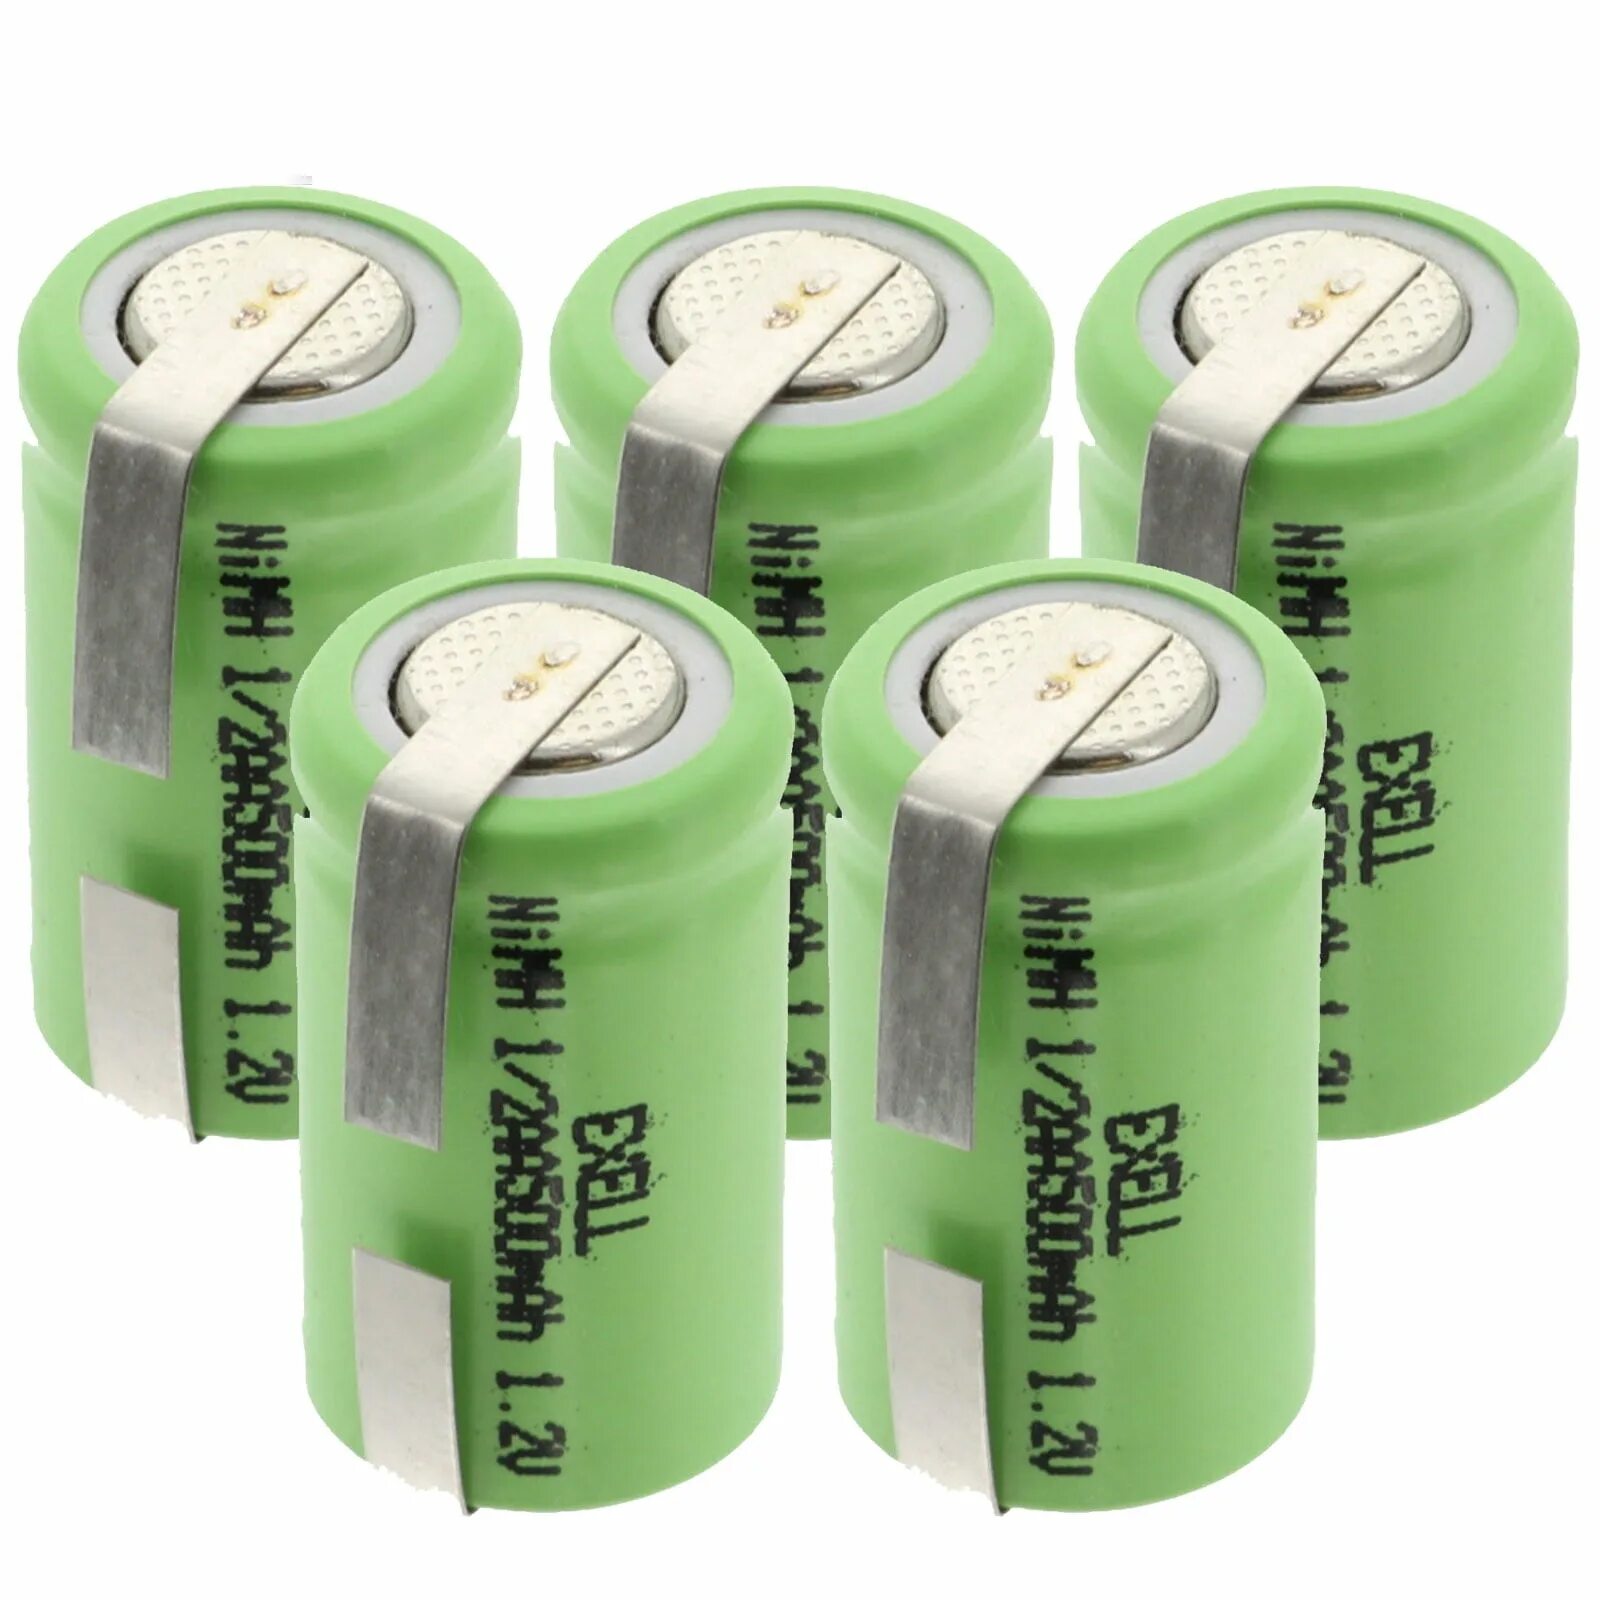 Battery 1. Аккумуляторная батарейка AA NIMH 300 Mah 1.2v. Ni-CD aa500mah 1.2v. 1.2V AA ni-CD 1000mah. 1,2 V 1/3aa 500mah ni-MH.